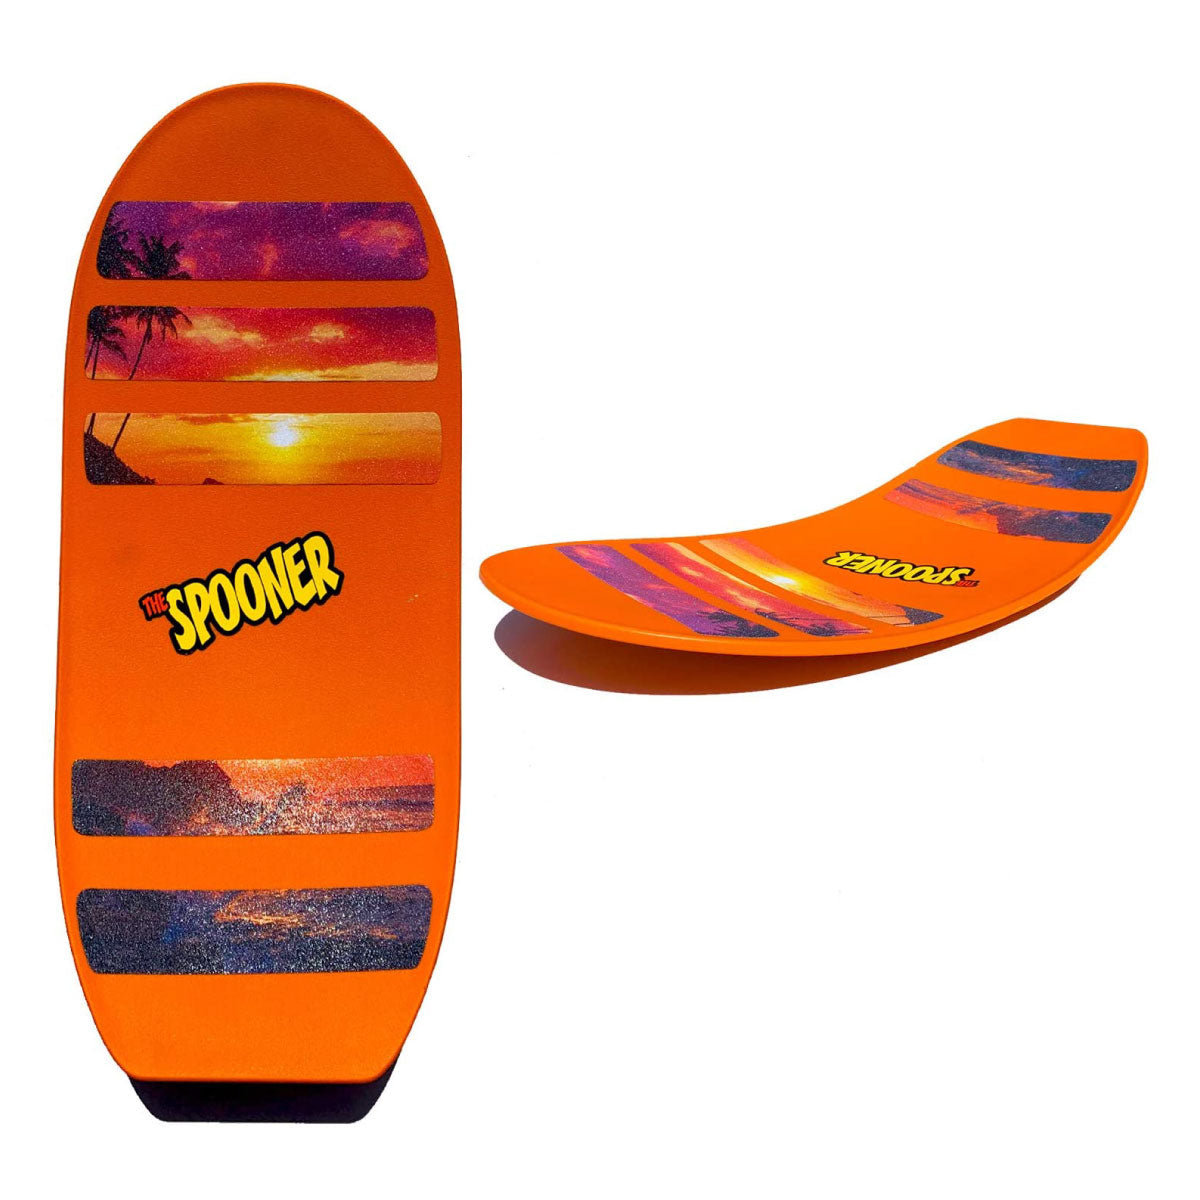 Pro Spooner Board - Orange with Scene Grip Tape